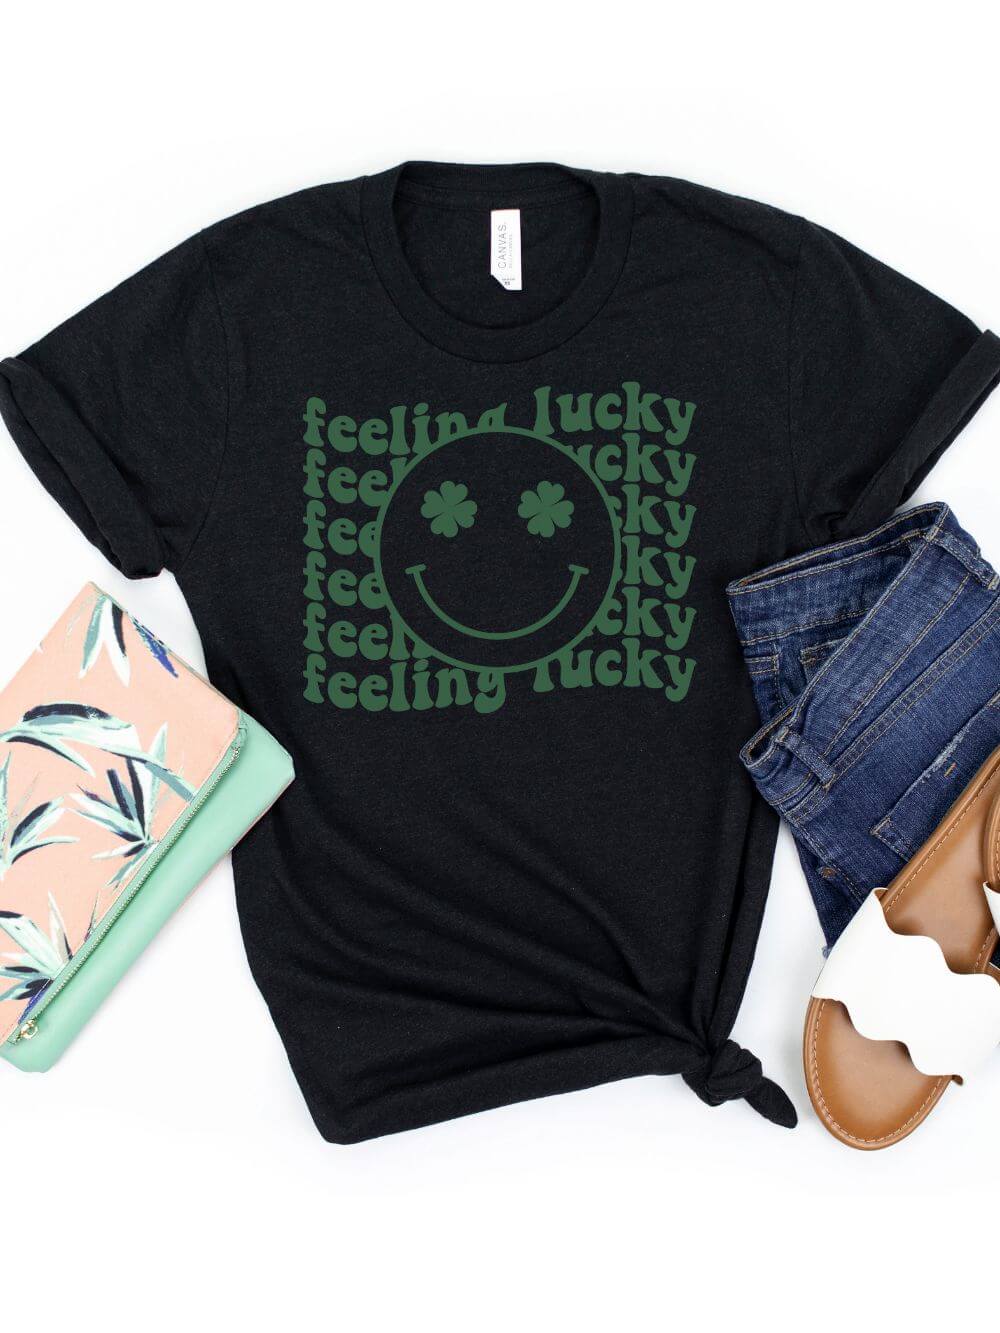 Feeling Lucky St. Patrick's Day Shamrock Smile Face T-Shirt